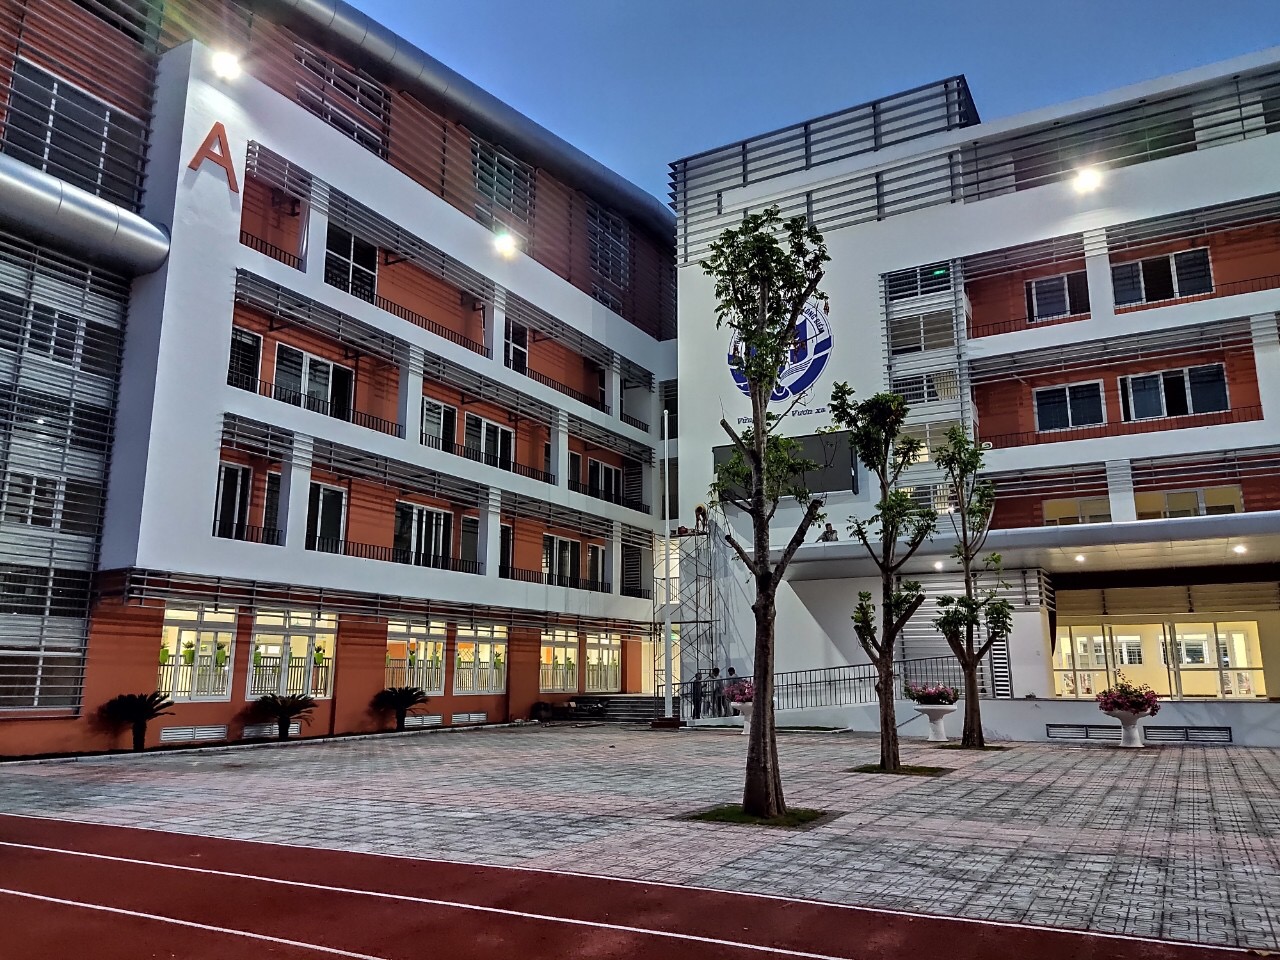 Một trường cấp 2 công lập ở Hà Nội "ĐỐN TIM" phụ huynh vì đẹp quá, nhìn đã muốn cho con vào học- Ảnh 2.